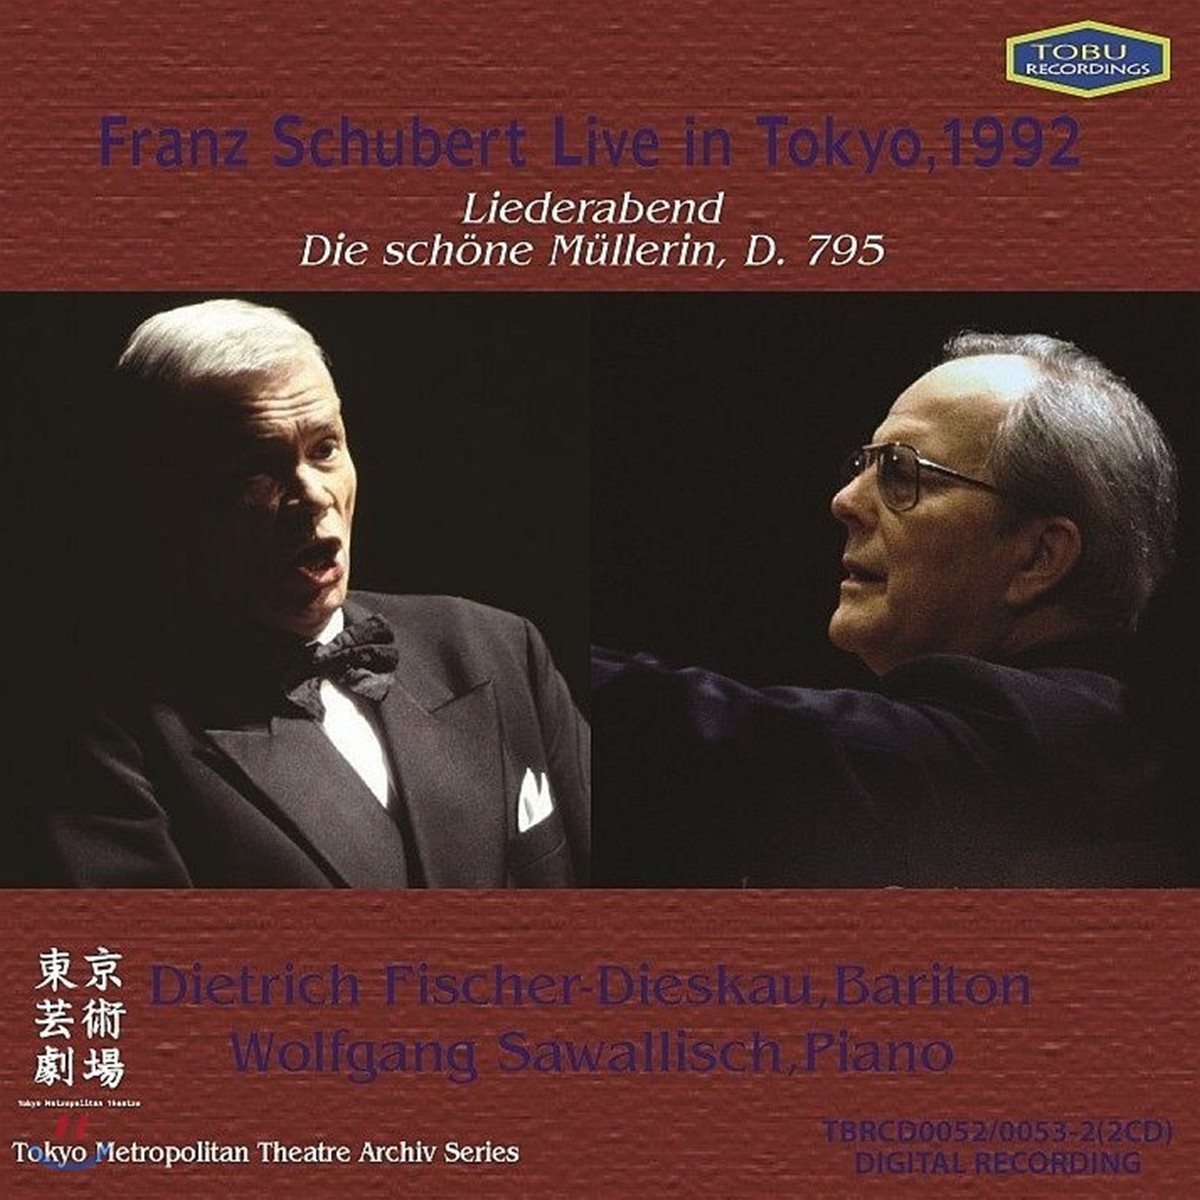 Dietrich Fischer-Dieskau / Wolfgang Sawallisch 슈베르트: 가곡의 밤 / 아름다운 물방앗간 아가씨 전곡 (Schubert: Liederabend / Die Schone Mullerin, D. 795)